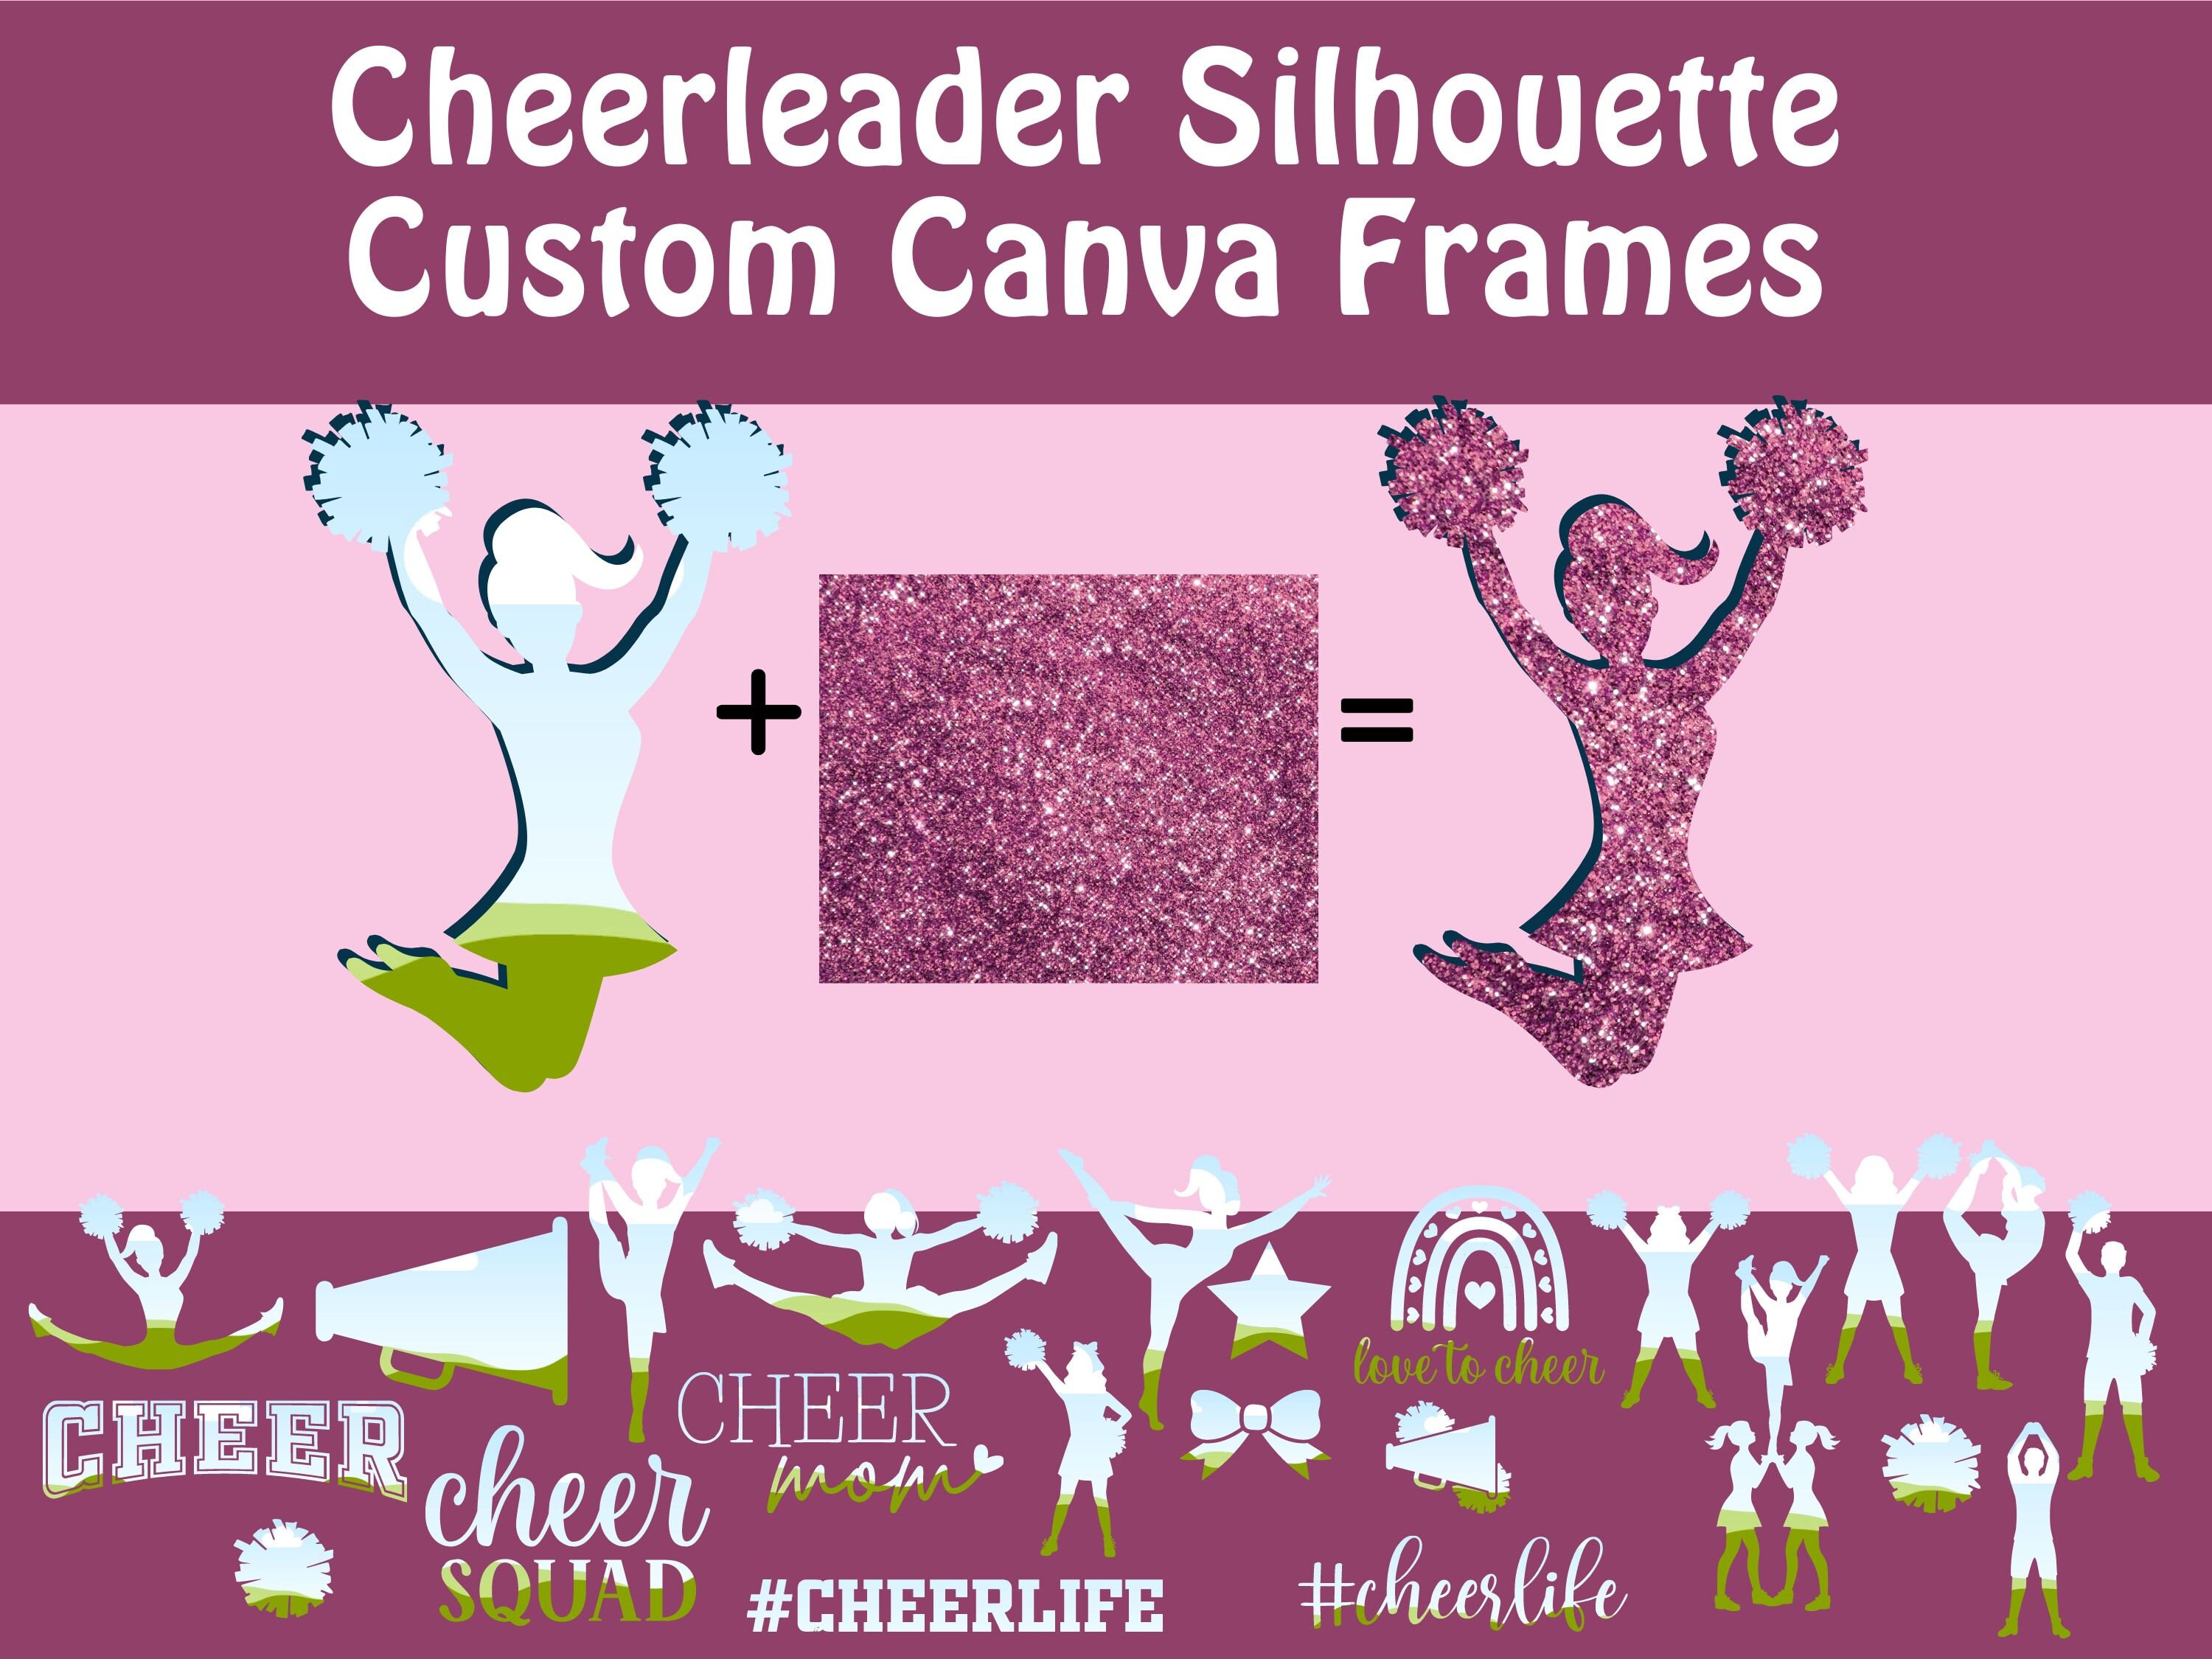 ▷ Costume Cheerleader rosa per bambina